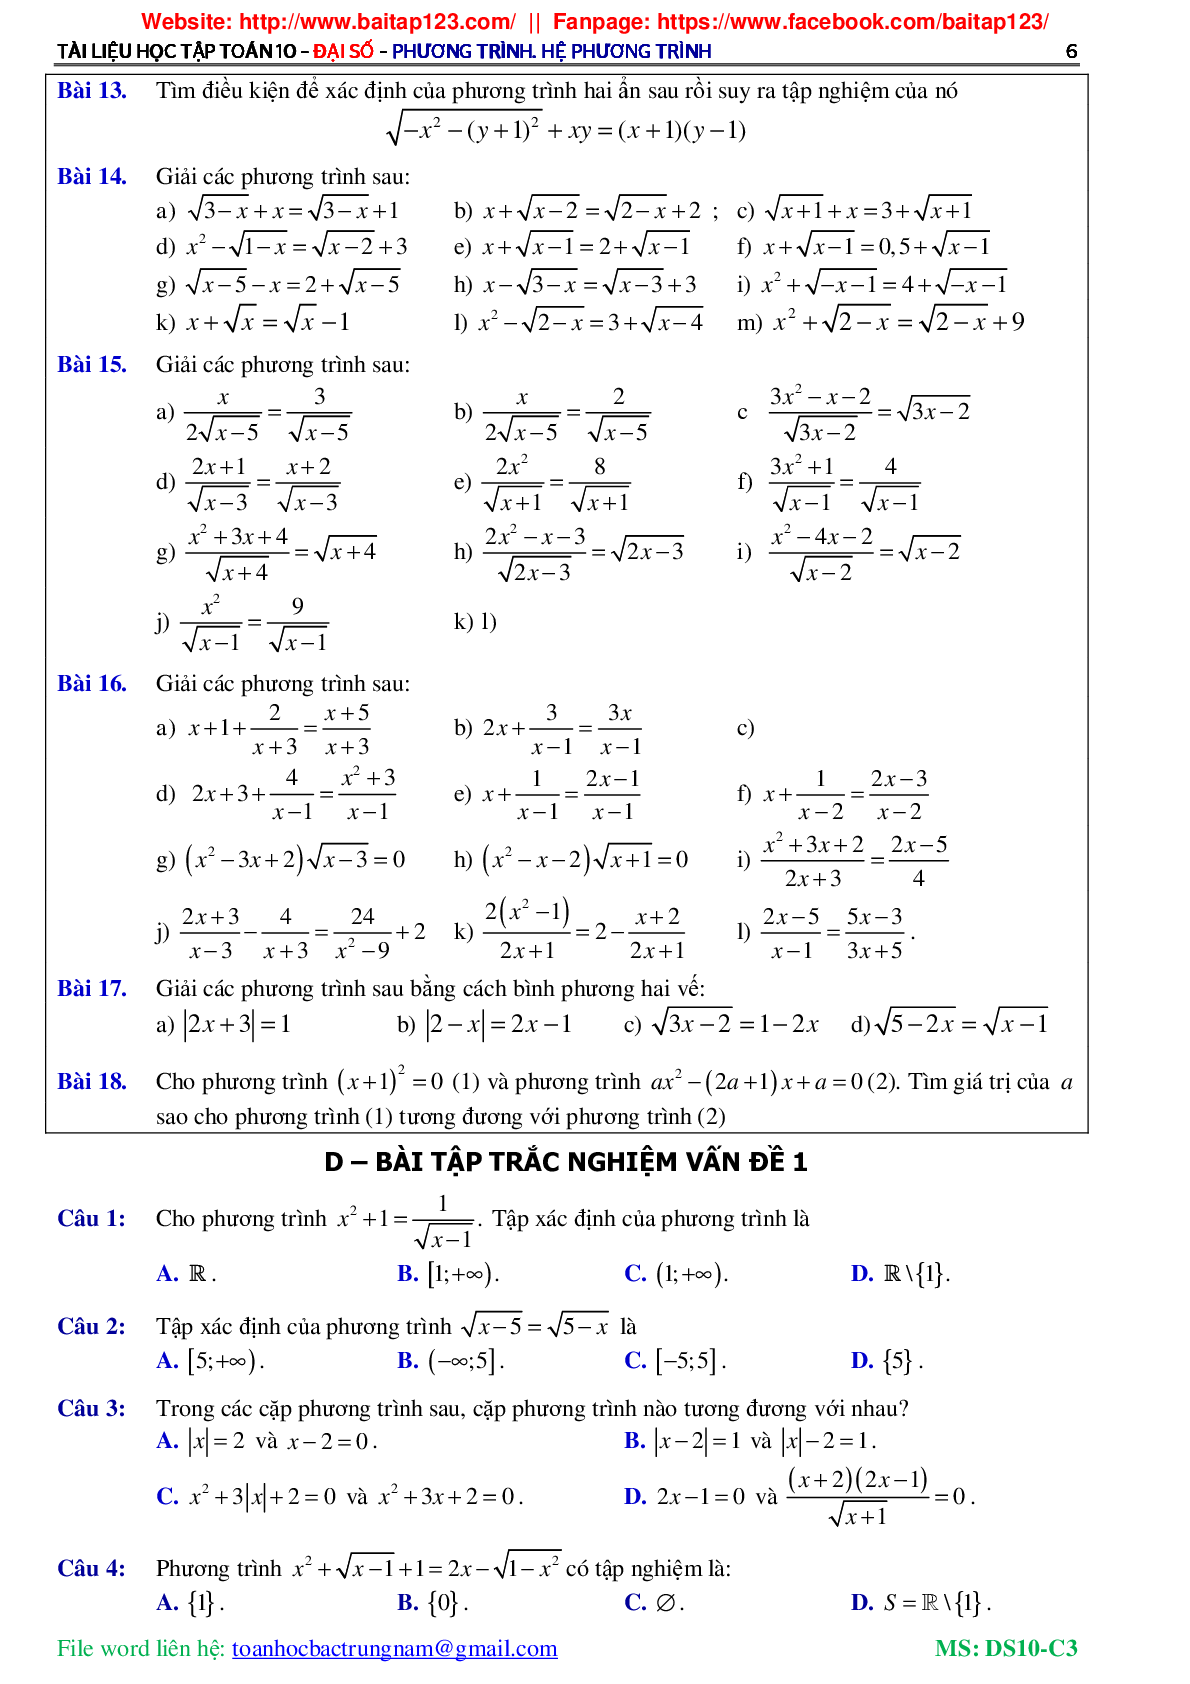 Các dạng toán phương trình và hệ phương trình môn Toán lớp 10 (trang 7)